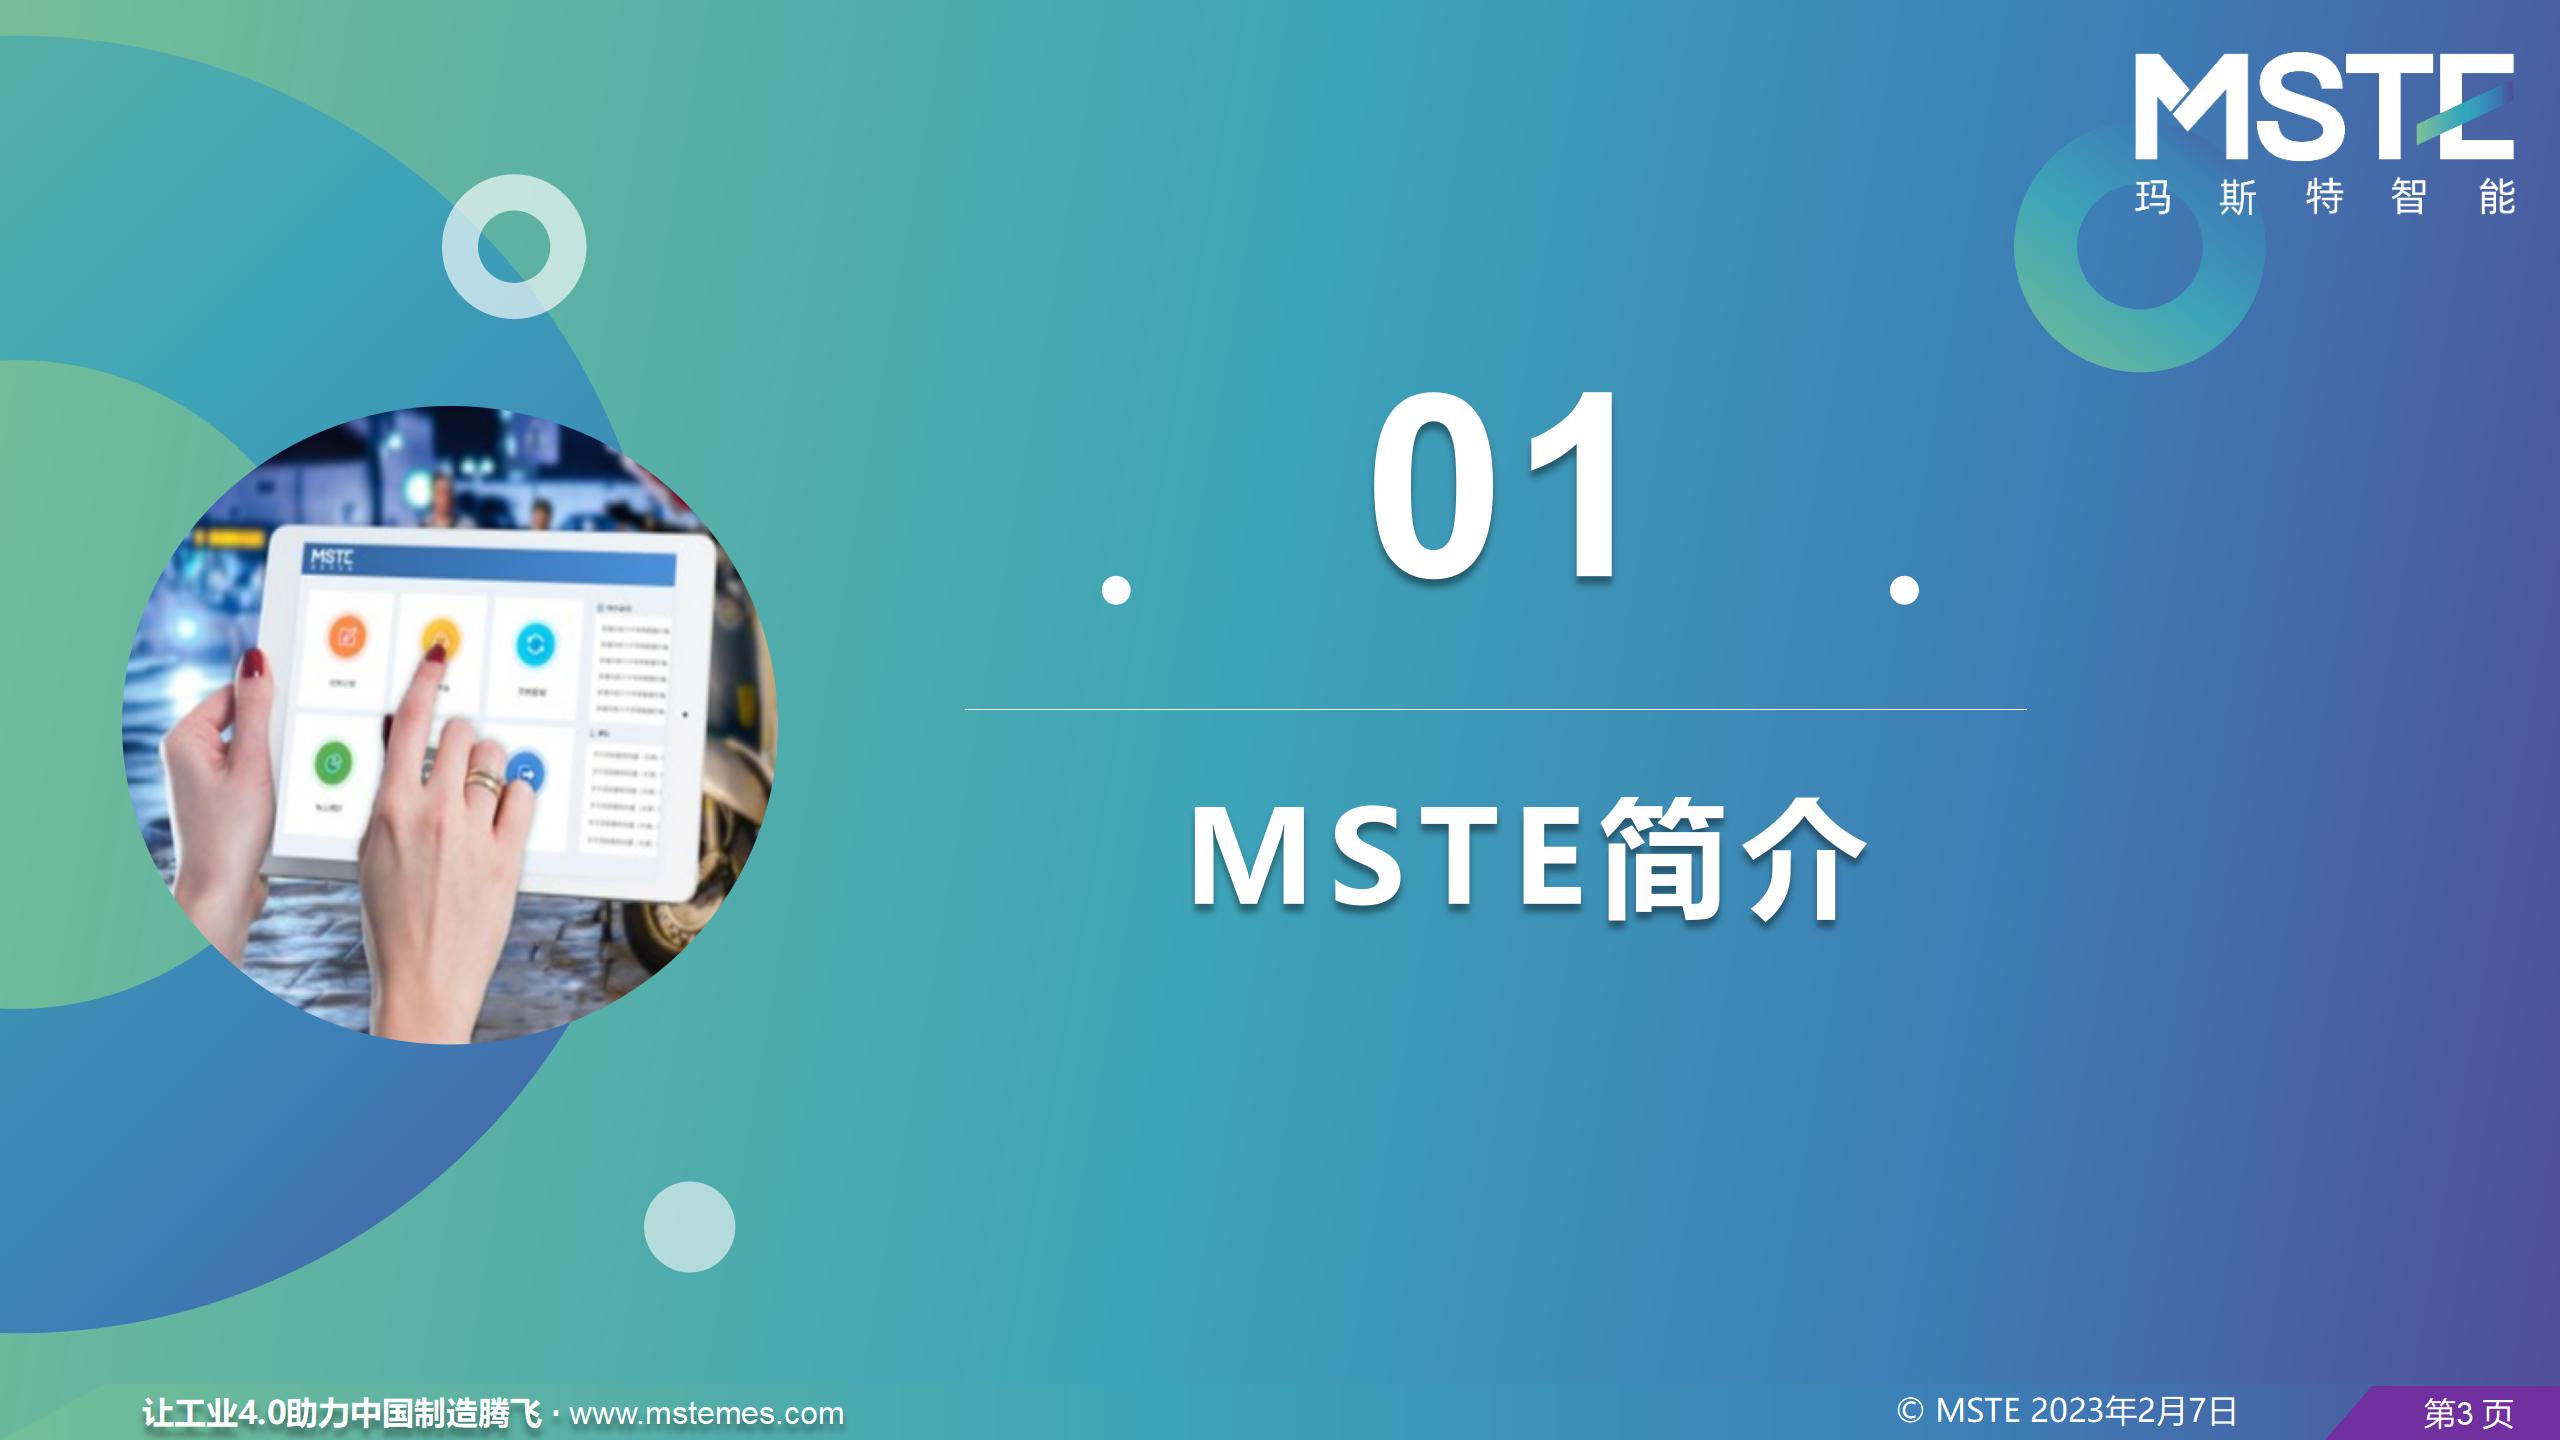 MSTE公司介绍2022-10-17更新_03.jpg